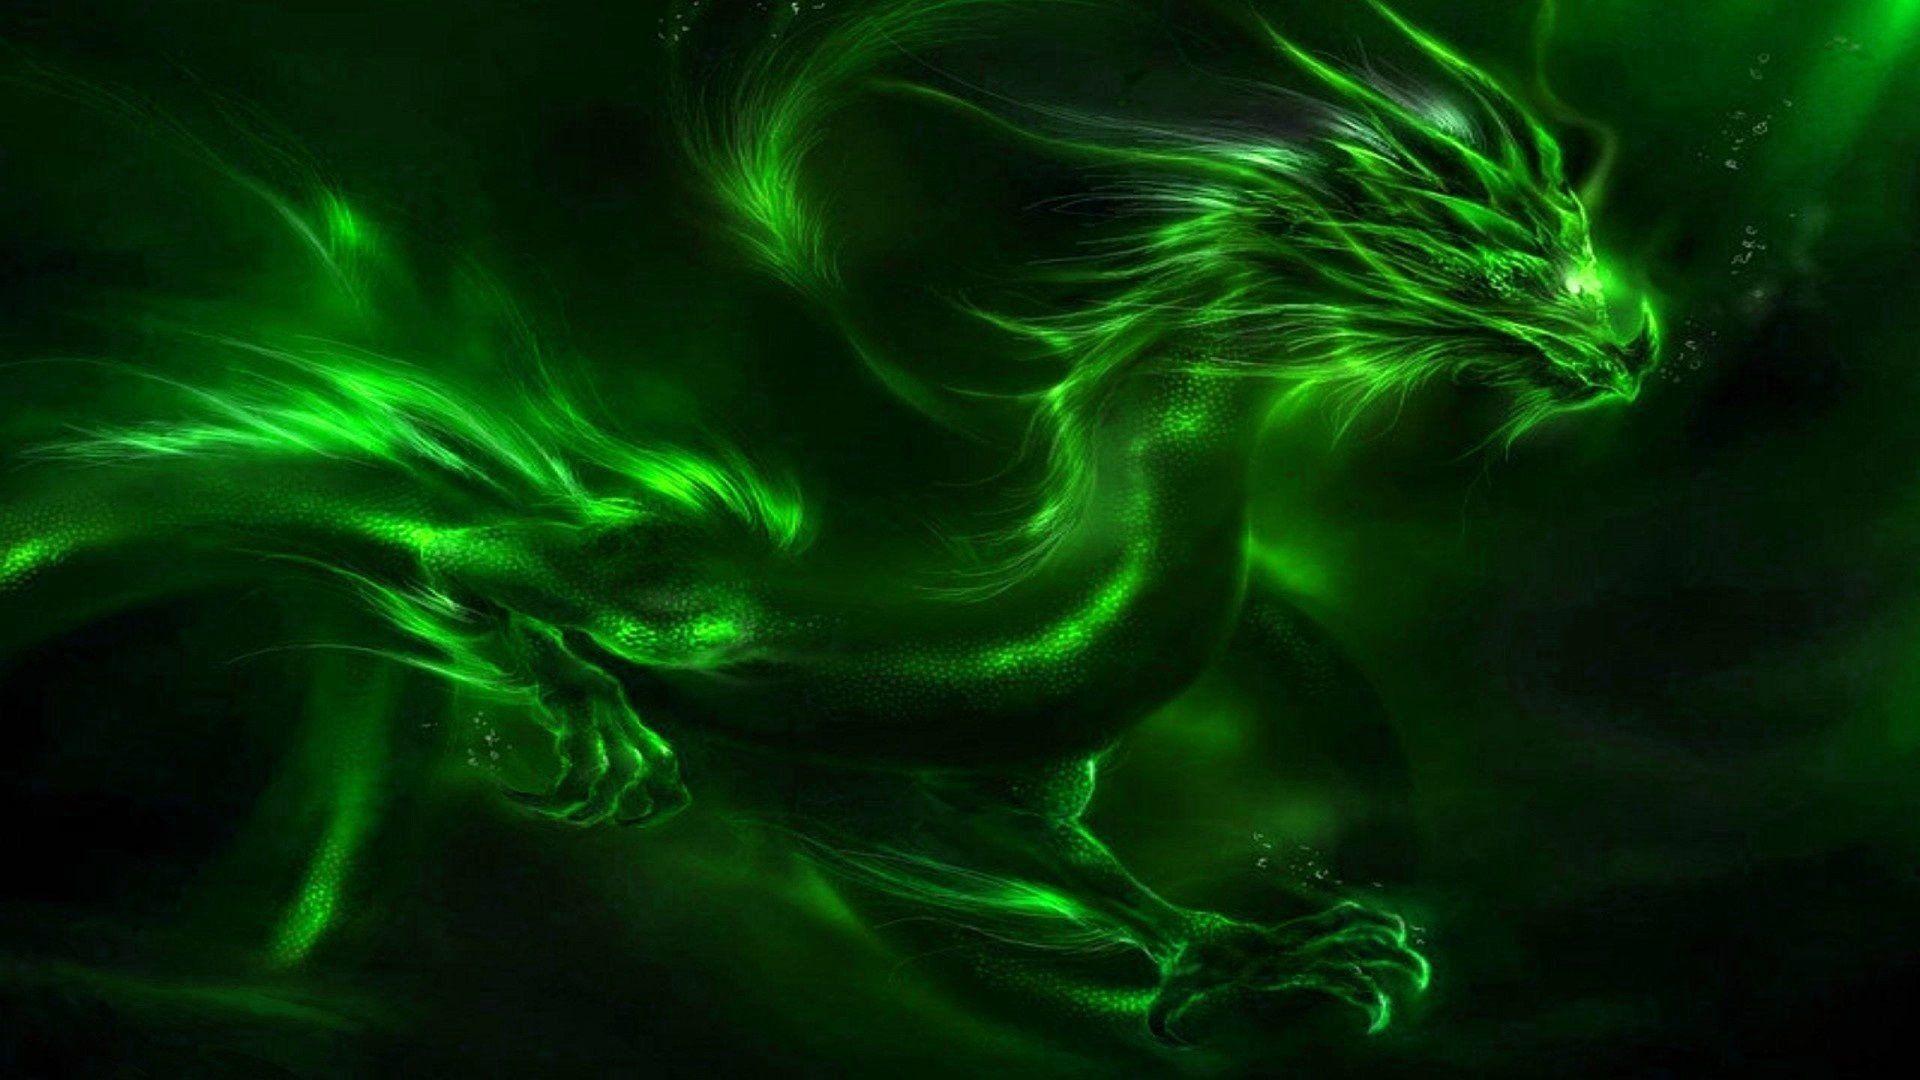 Neon Green Dragon Wallpapers là lựa chọn tuyệt vời để thêm lửa sáng cho điện thoại của bạn. Thiết kế sáng tạo và hiện đại này chắc chắn sẽ mang lại cho bạn cảm giác mới mẻ và đầy mê hoặc.